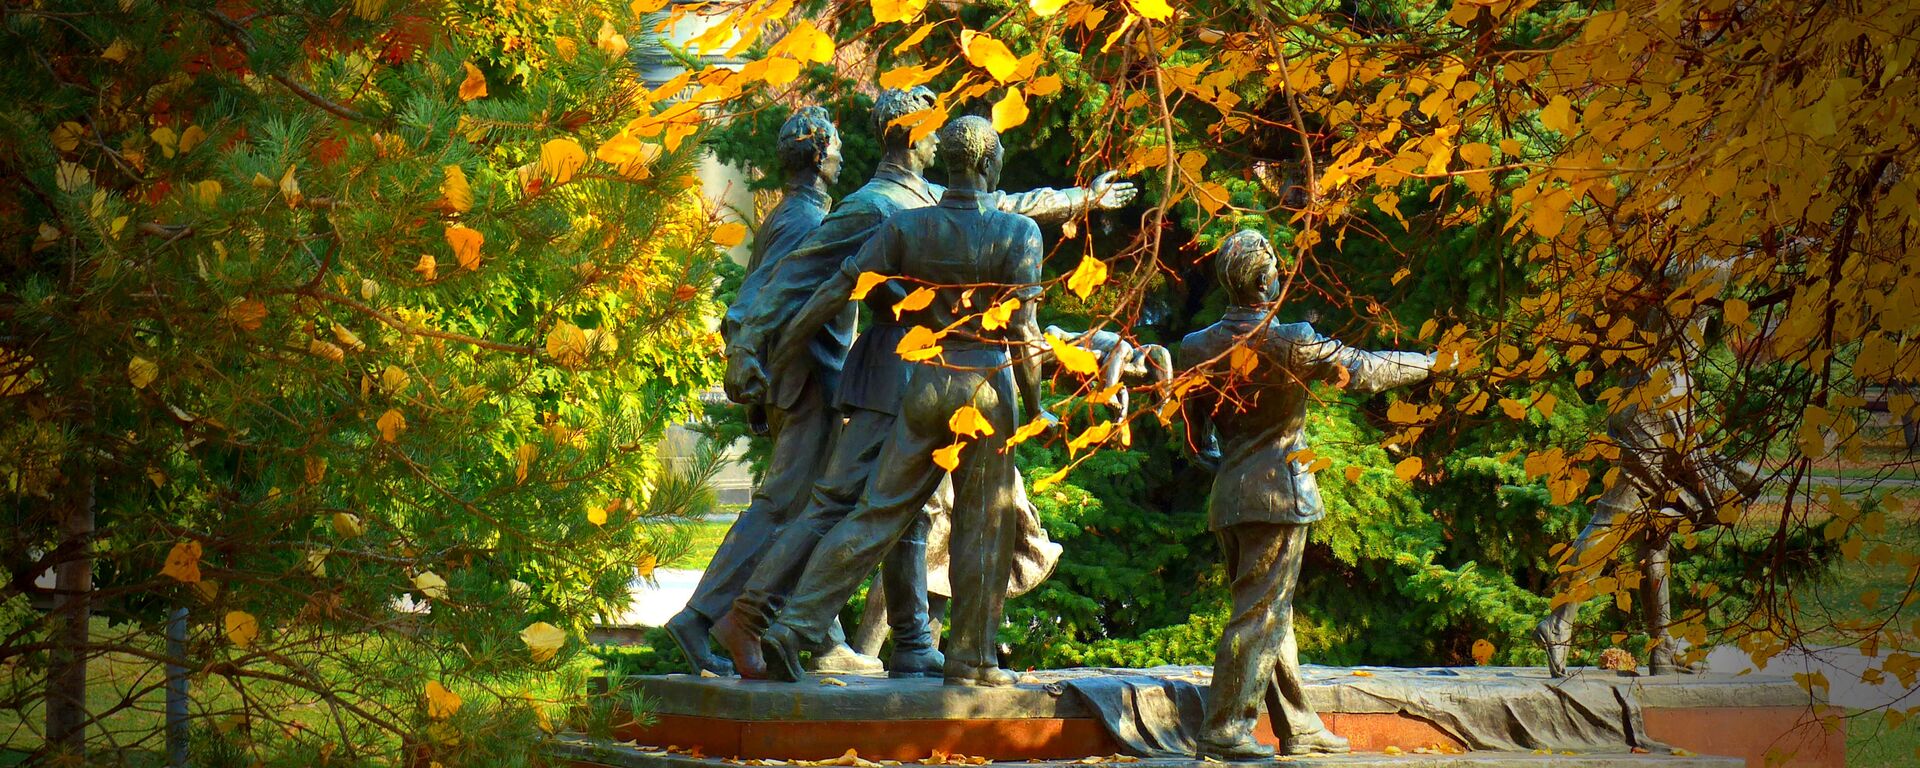 Памятник Веры Мухиной Требуем мира! в парке искусств Музеон в Москве - Sputnik Грузия, 1920, 21.09.2020